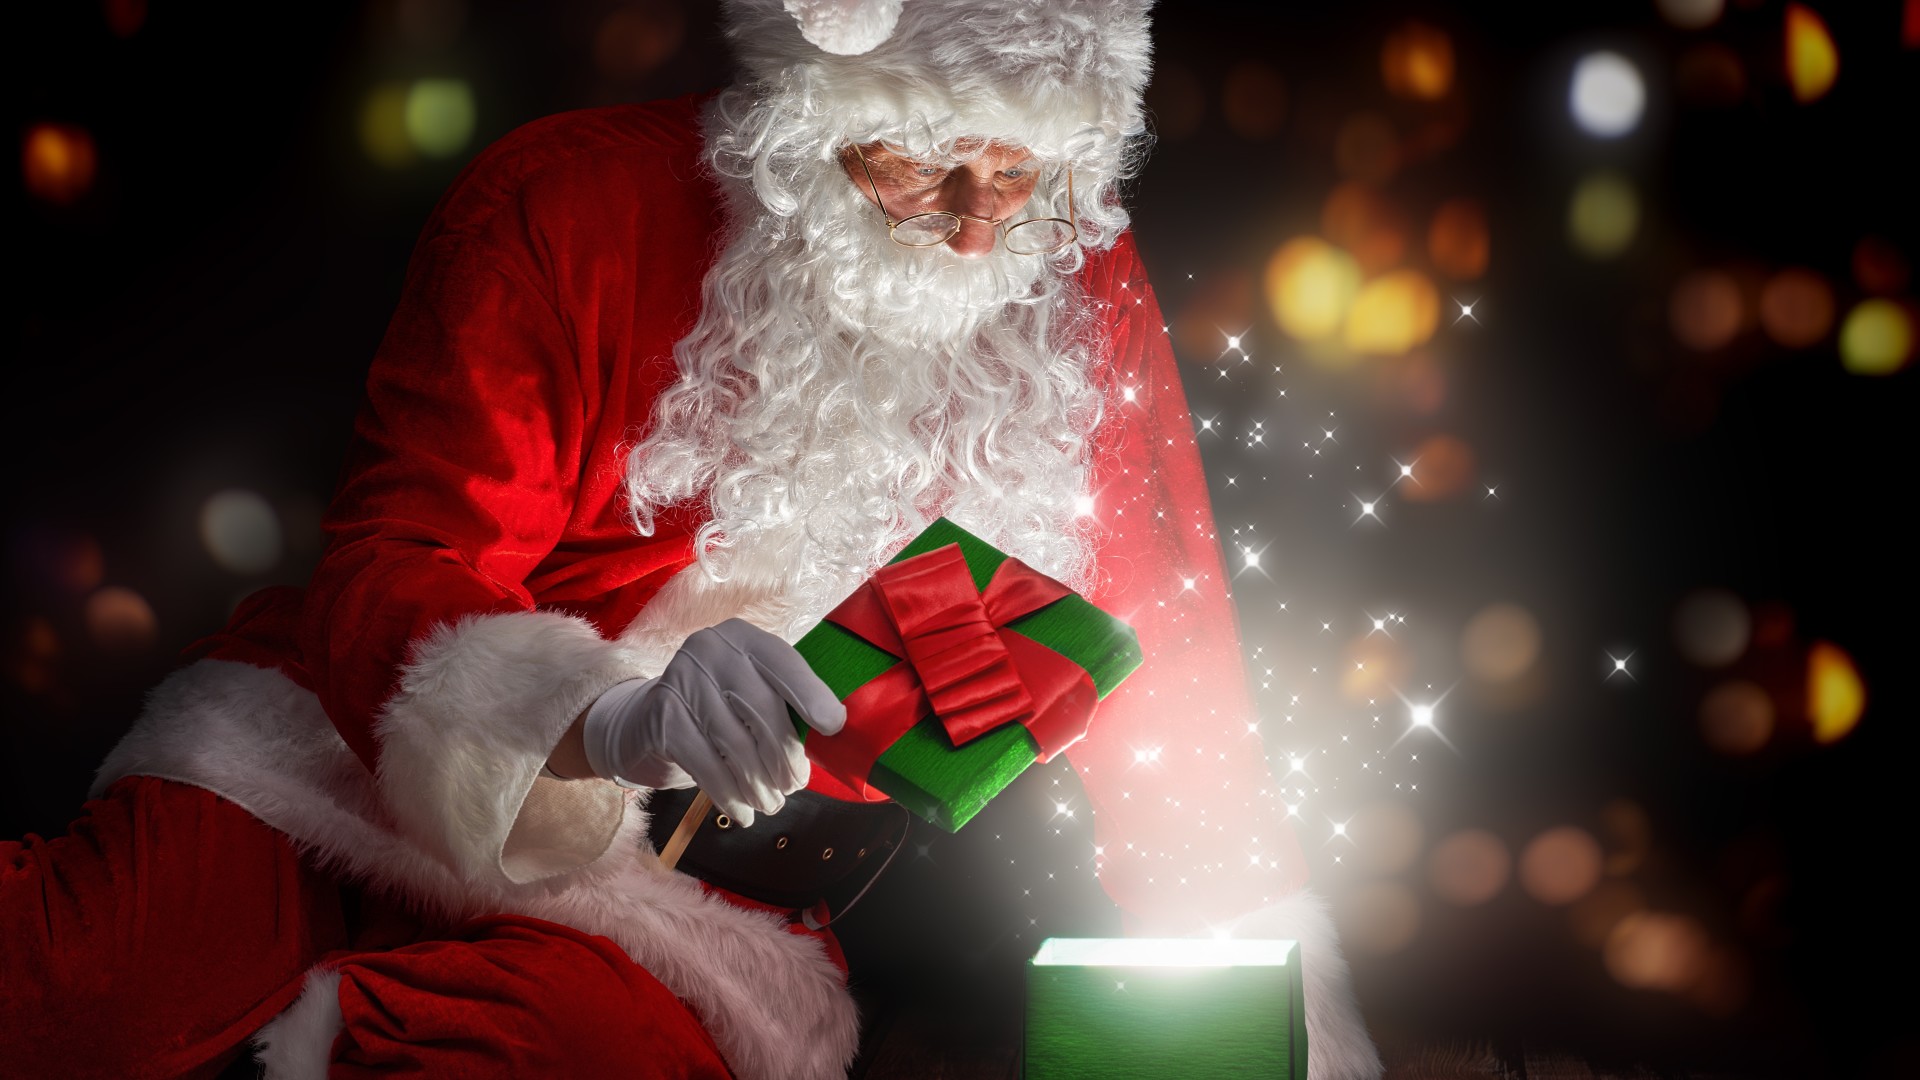 산타 클로스의 hd 월페이퍼 1080p,산타 클로스,크리스마스,소설 속의 인물,크리스마스 이브,크리스마스 조명